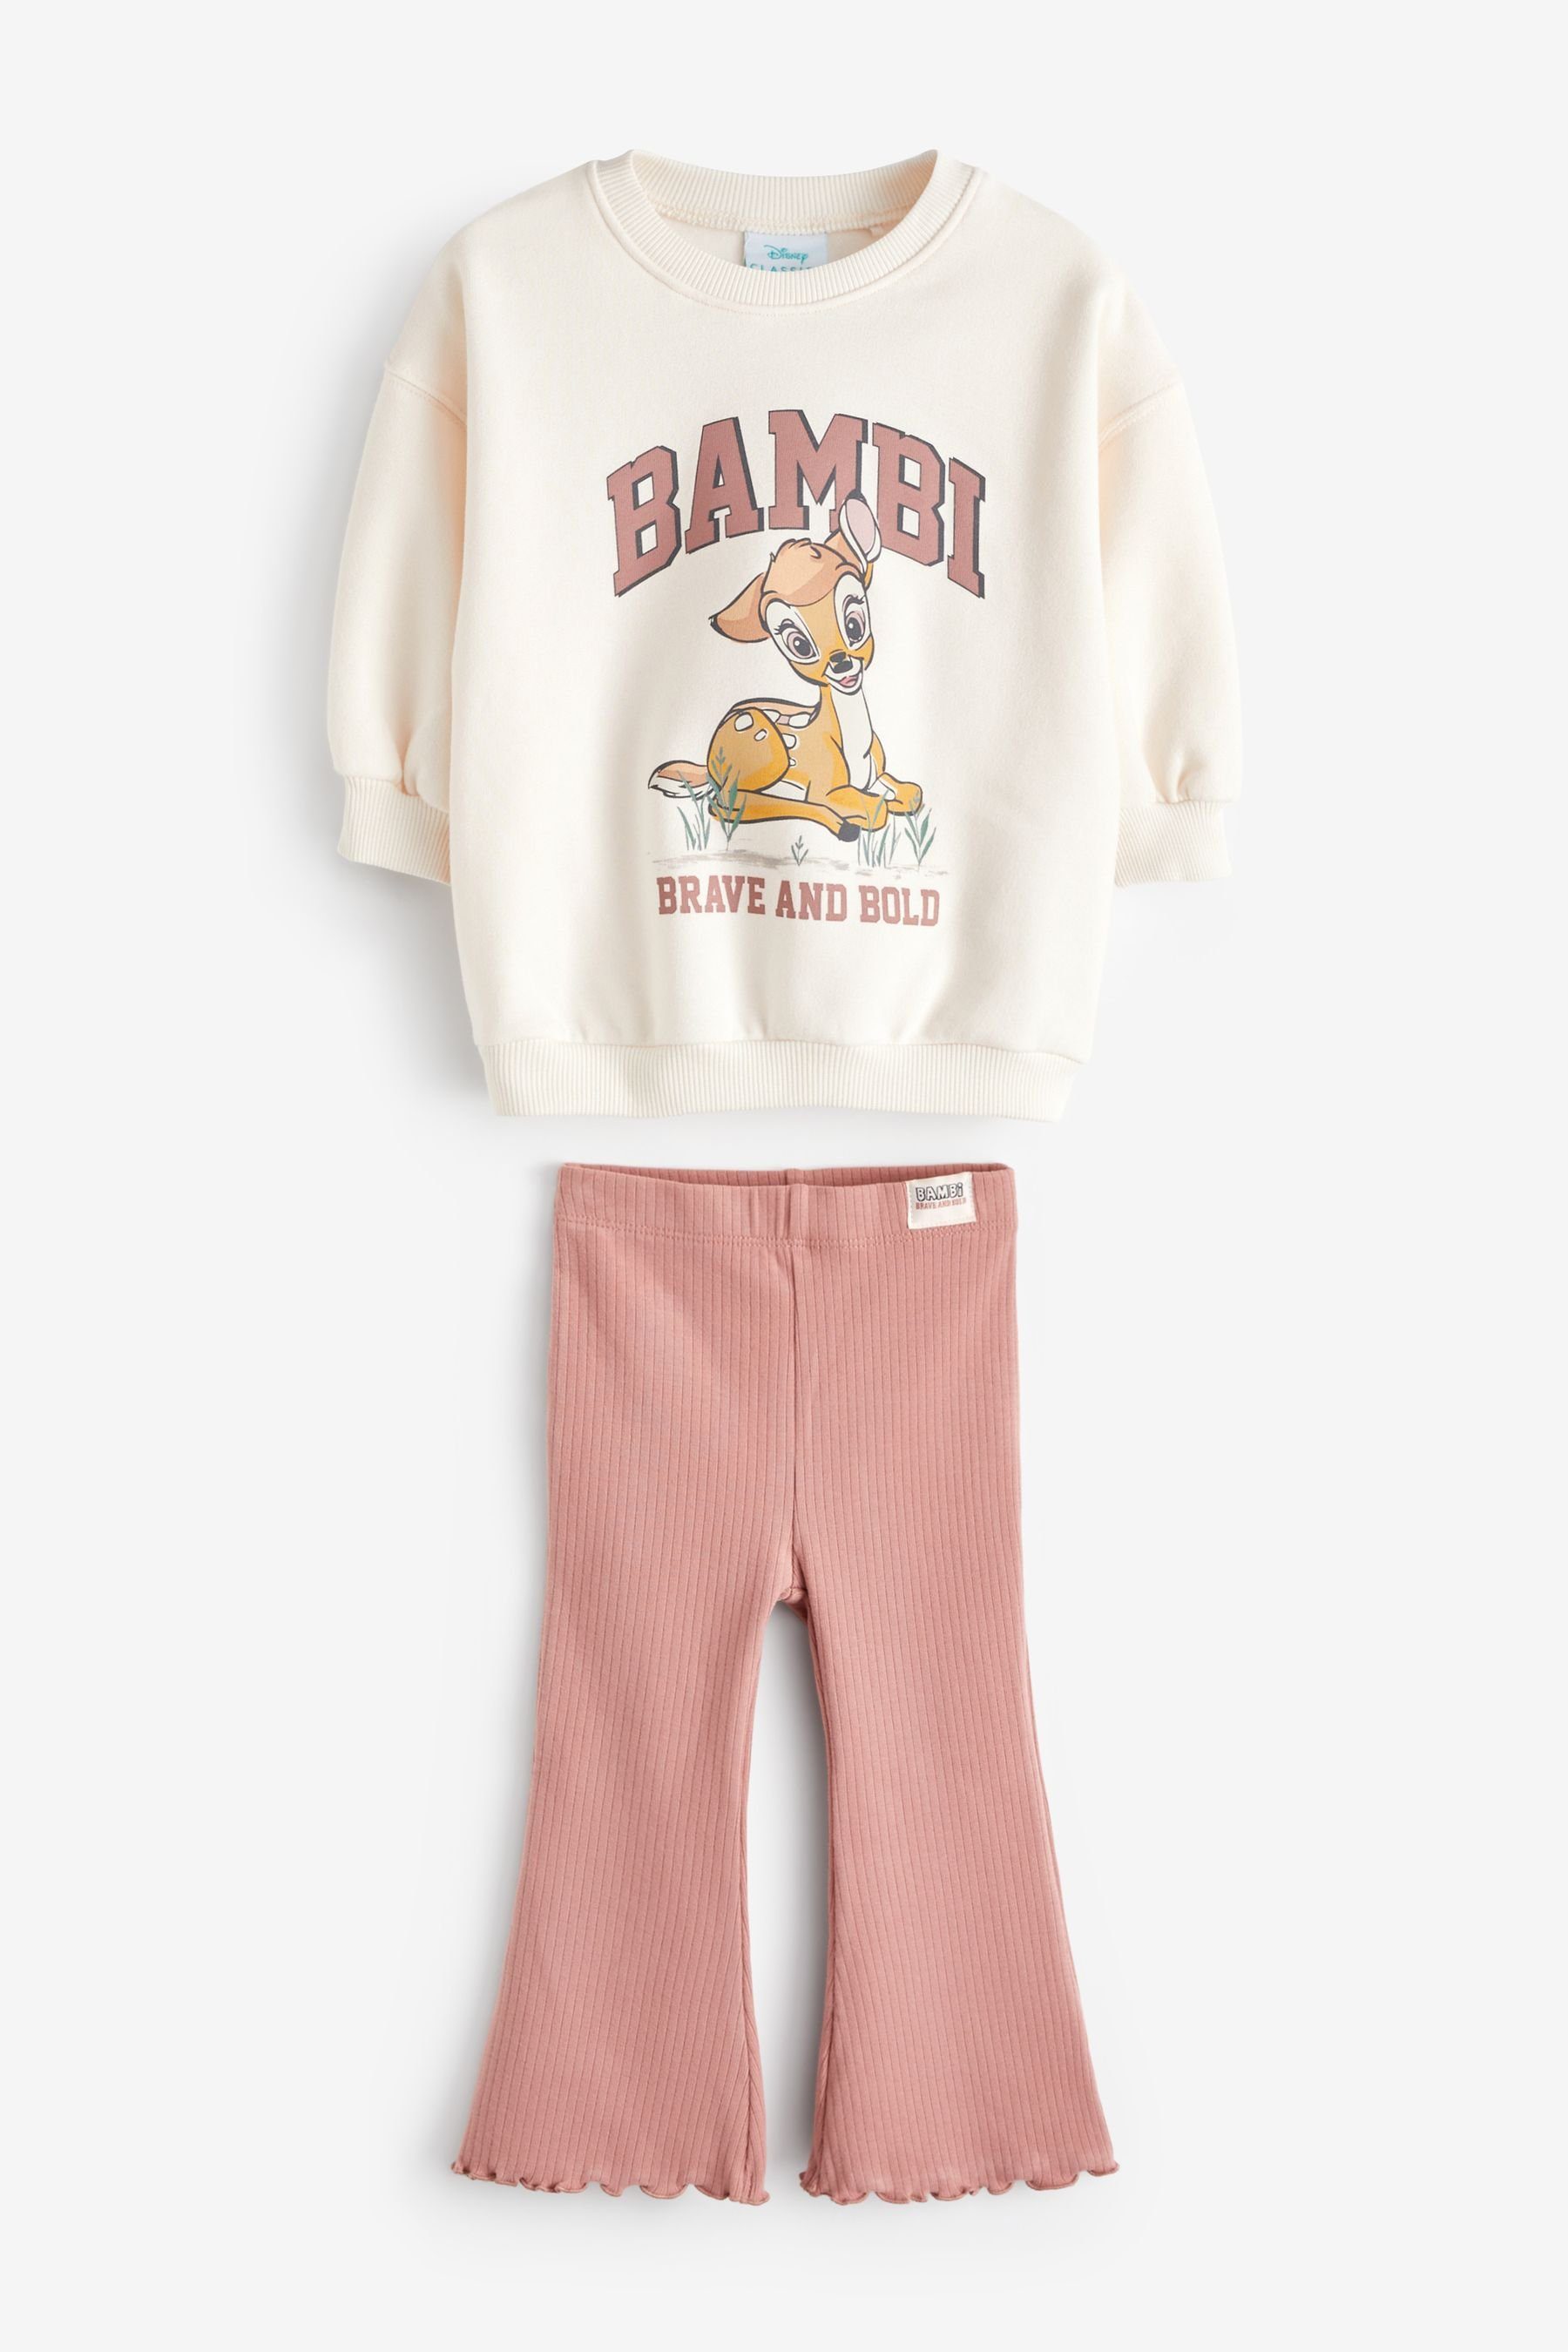 Bambi Mode online kaufen » Bambi Bekleidung | OTTO